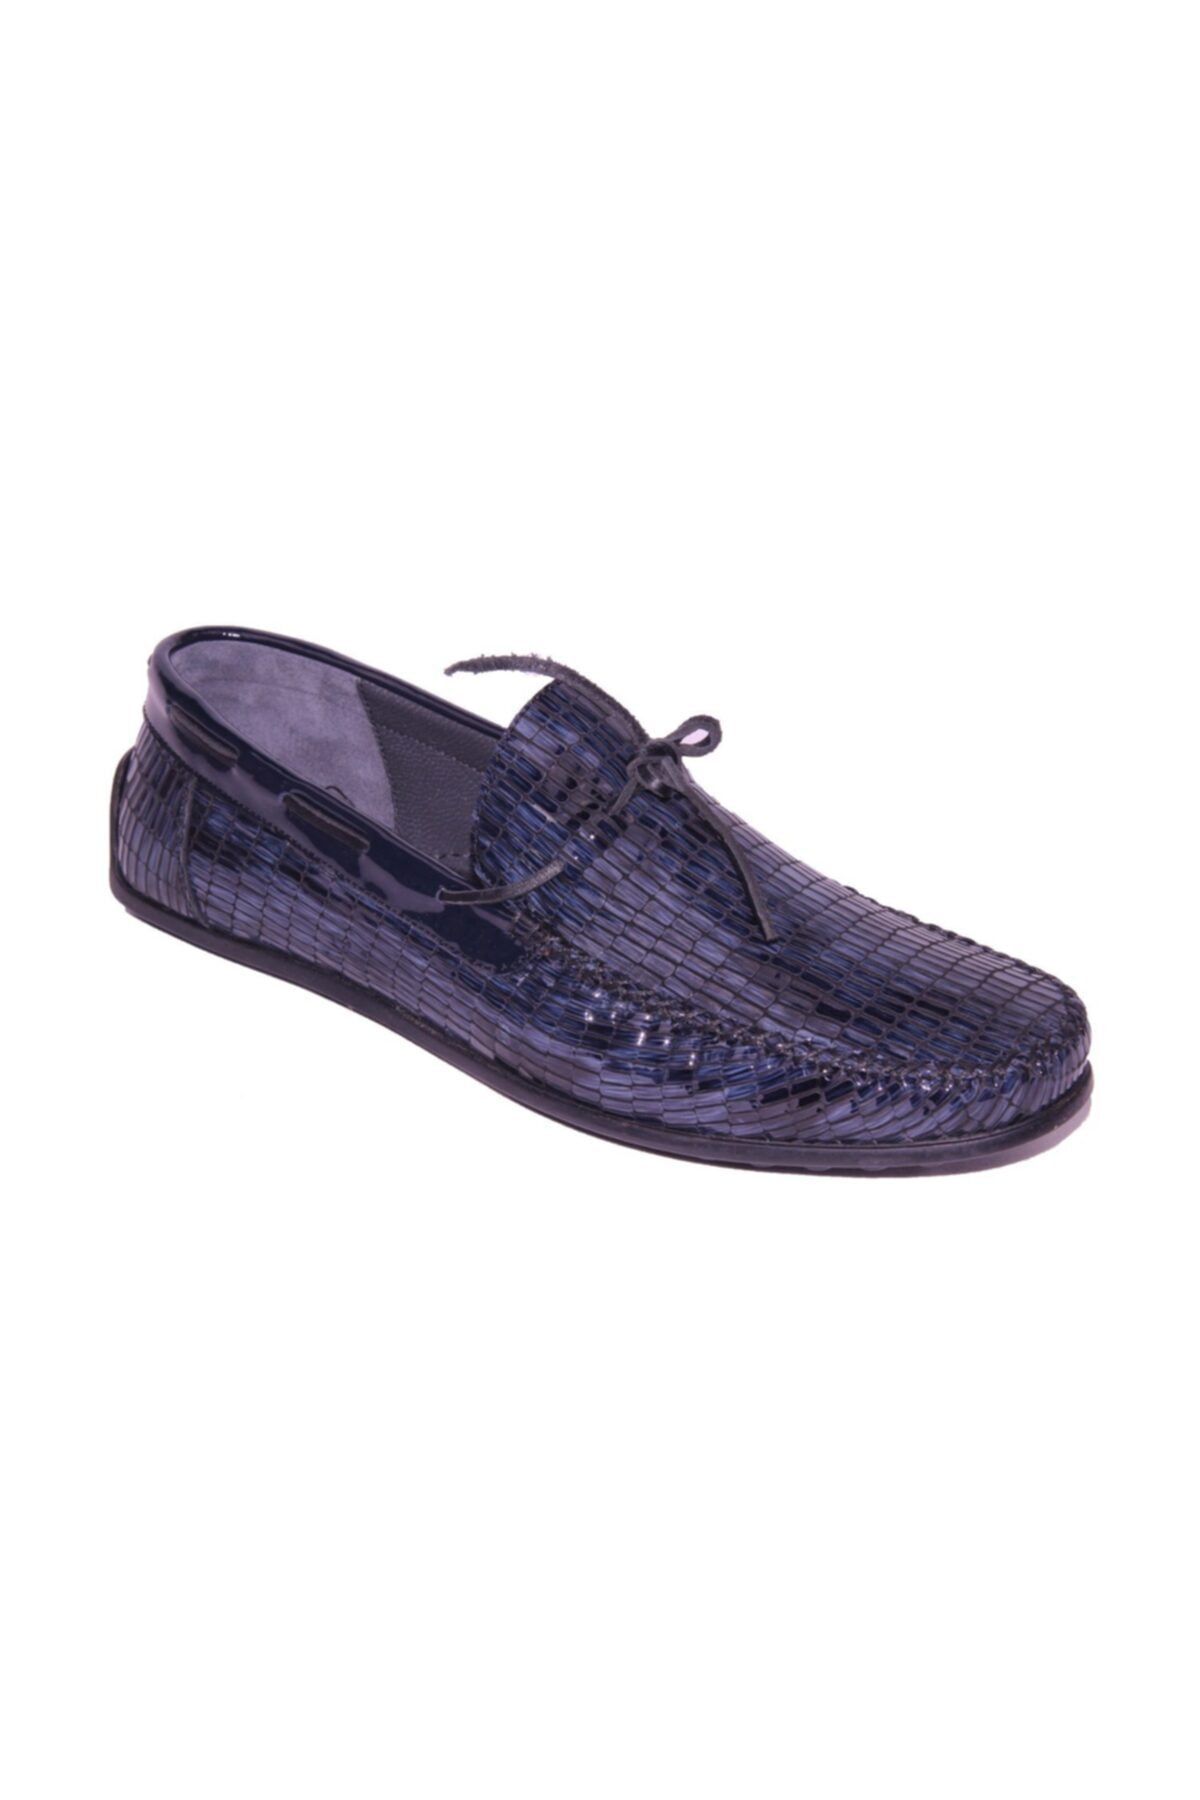 ARİNO Erkek Klasik Spor  Günlük Timberland Loafer Ayakkabı   Corocco